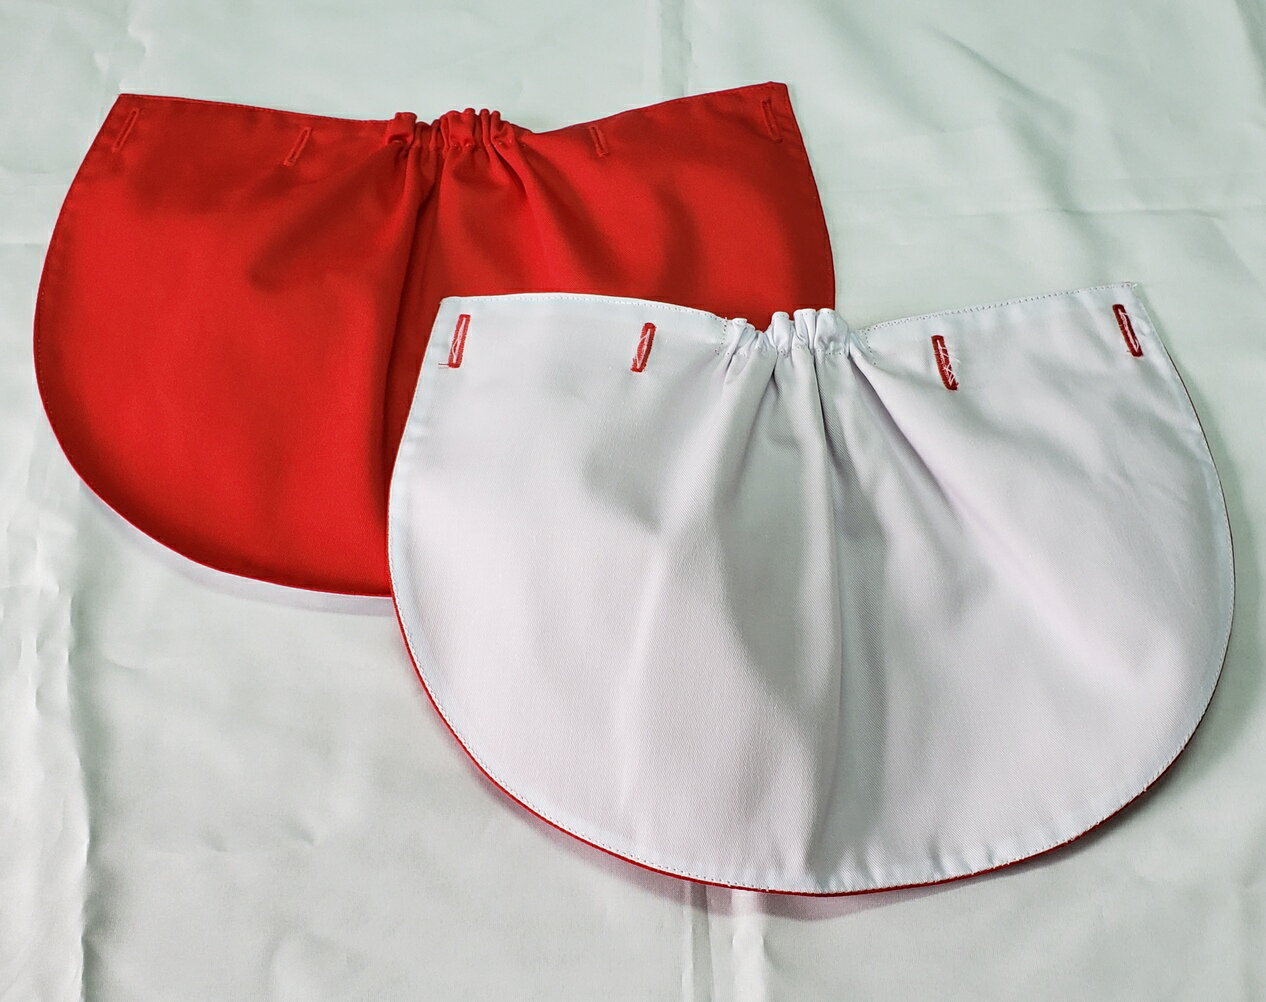 赤白帽子の日よけの垂れ。 素材(赤布・白布共)綿35%・ポリエステル65% (注)　赤布の色は布染のメーカーによって違いがありますので、お手持ちの帽子の赤色と異なる場合があります。 又、布の厚みも異なる場合があります。 ご了承をお願い申し上げます。 サイズ　縦20cm　一番広い部分の横30cm 穴の幅　16mm 付属で半透明の4個ボタン付き 穴の縫い糸は縫製の都合により、赤色部分は赤糸ですが、白色部分も赤糸になります。 ご了承をお願い申し上げます。 16mmのボタンの穴を4か所あけていますので、 市販のお好みの帽子に、 市販のお好みのボタンを付けれます(*^_^*) 付属で半透明の4個ボタン付き ボタンの付け方 1・お手持ちの帽子の中心を合わせる 2・中心より左右6cmの所に印を付ける 3・2の印から端に向けて7cmの所に印を付ける 4・2と3で着けた印の所にお好みのボタン(15mm)又は付属の半透明ボタンを縫い付けて、この垂れ(フラップ)のボタン穴をはめる お買い上げの際には、ボタンの付け方の説明書(ボタン4個を貼り付けています)を同封して、お届けいたします。赤白帽子の日よけの垂れだけが欲しい! とゆう、お客様の要望にお応えして製作しました。 布の色は布のメーカーによって違いがありますので、ご理解、ご了承をお願い申し上げます。